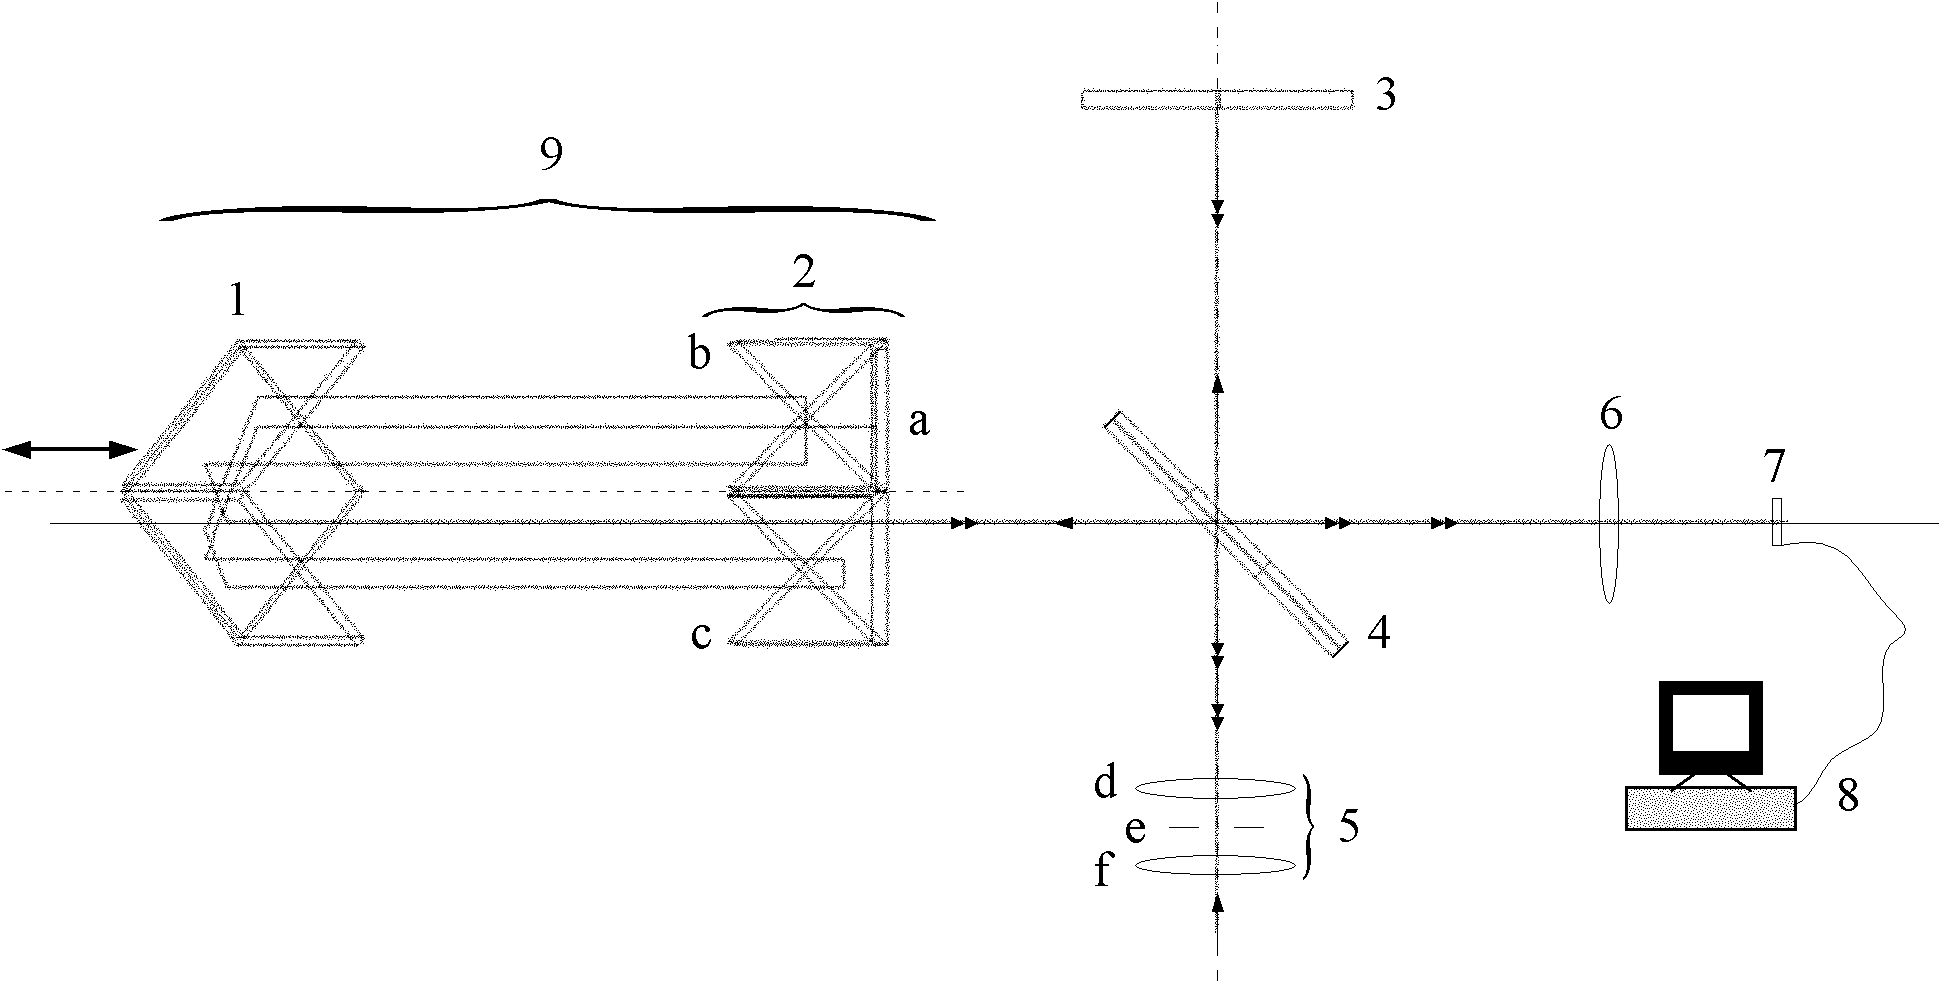 Light splitting method for multi-light-path interferometer, and multi-light-path interferometer adopting light splitting method